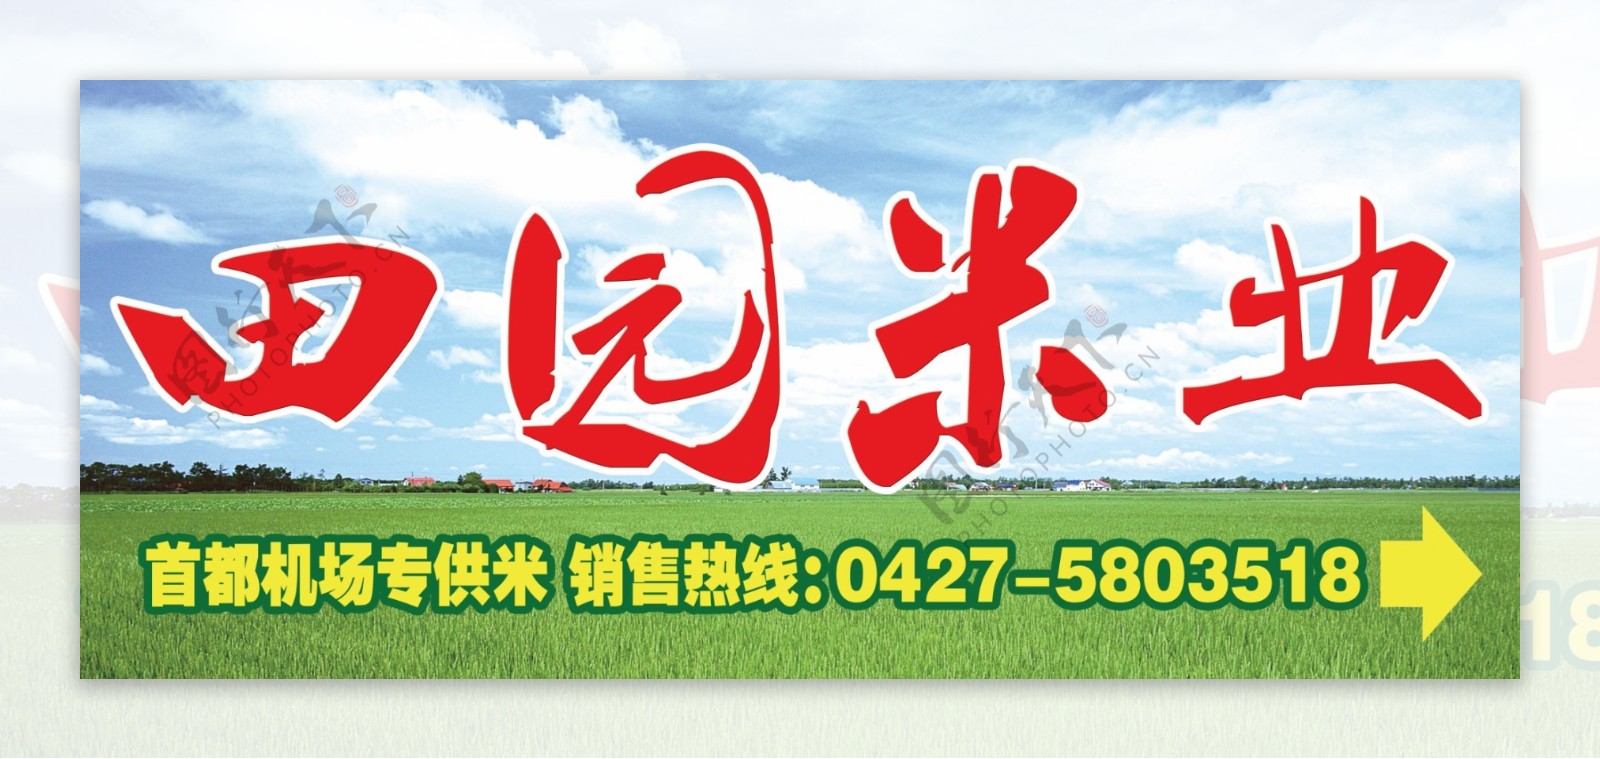 田园米业图片